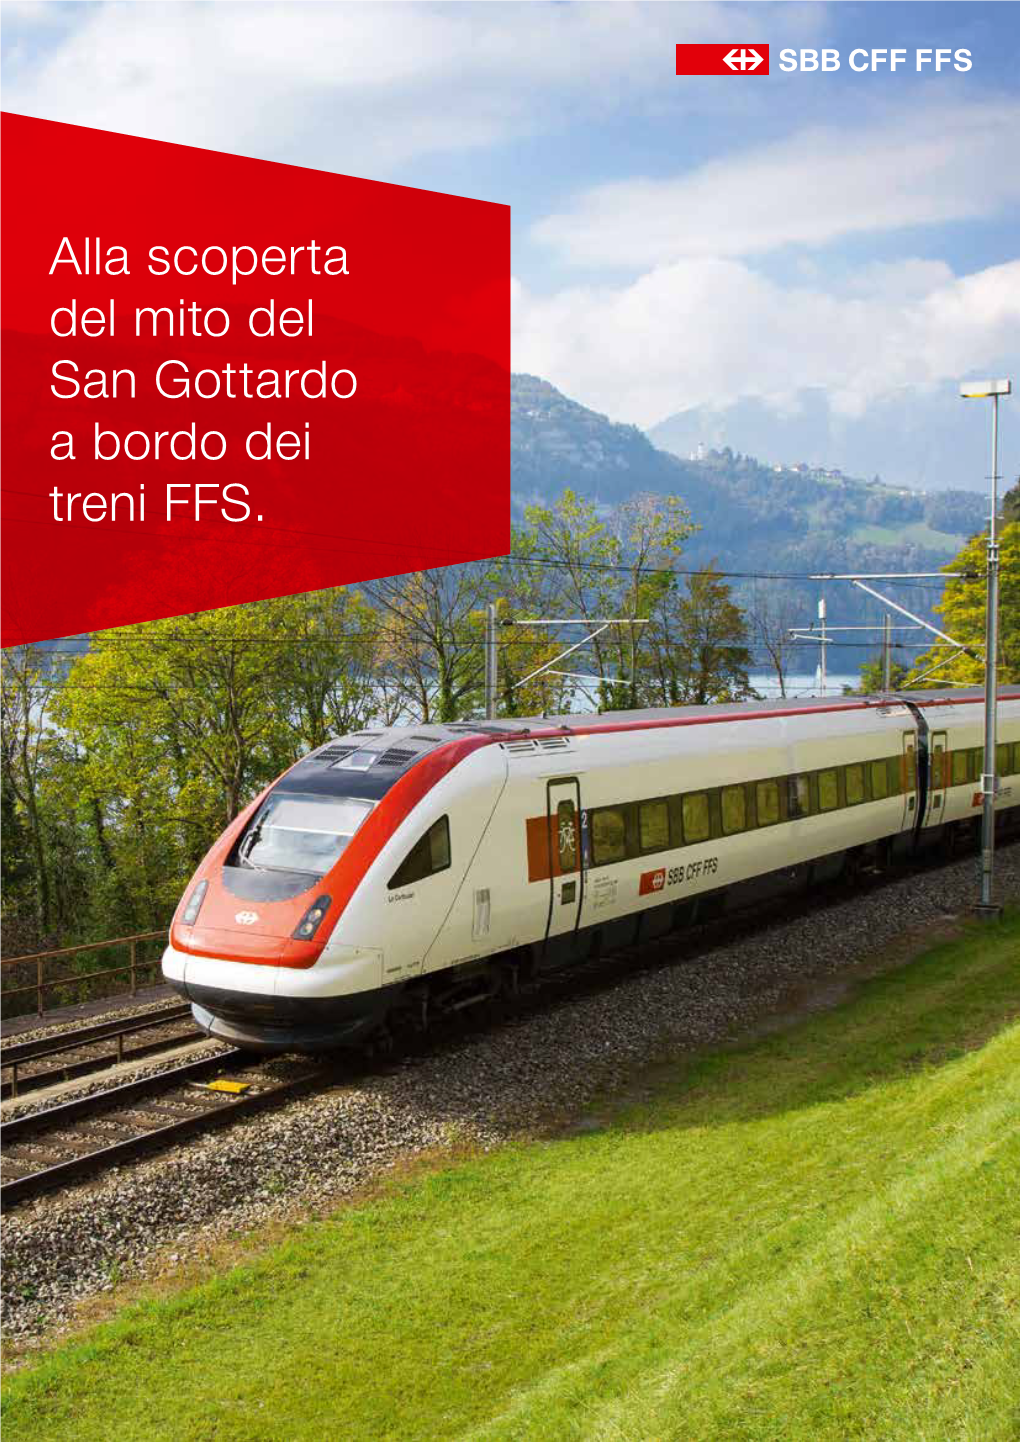 Alla Scoperta Del Mito Del San Gottardo a Bordo Dei Treni FFS. Editoriale